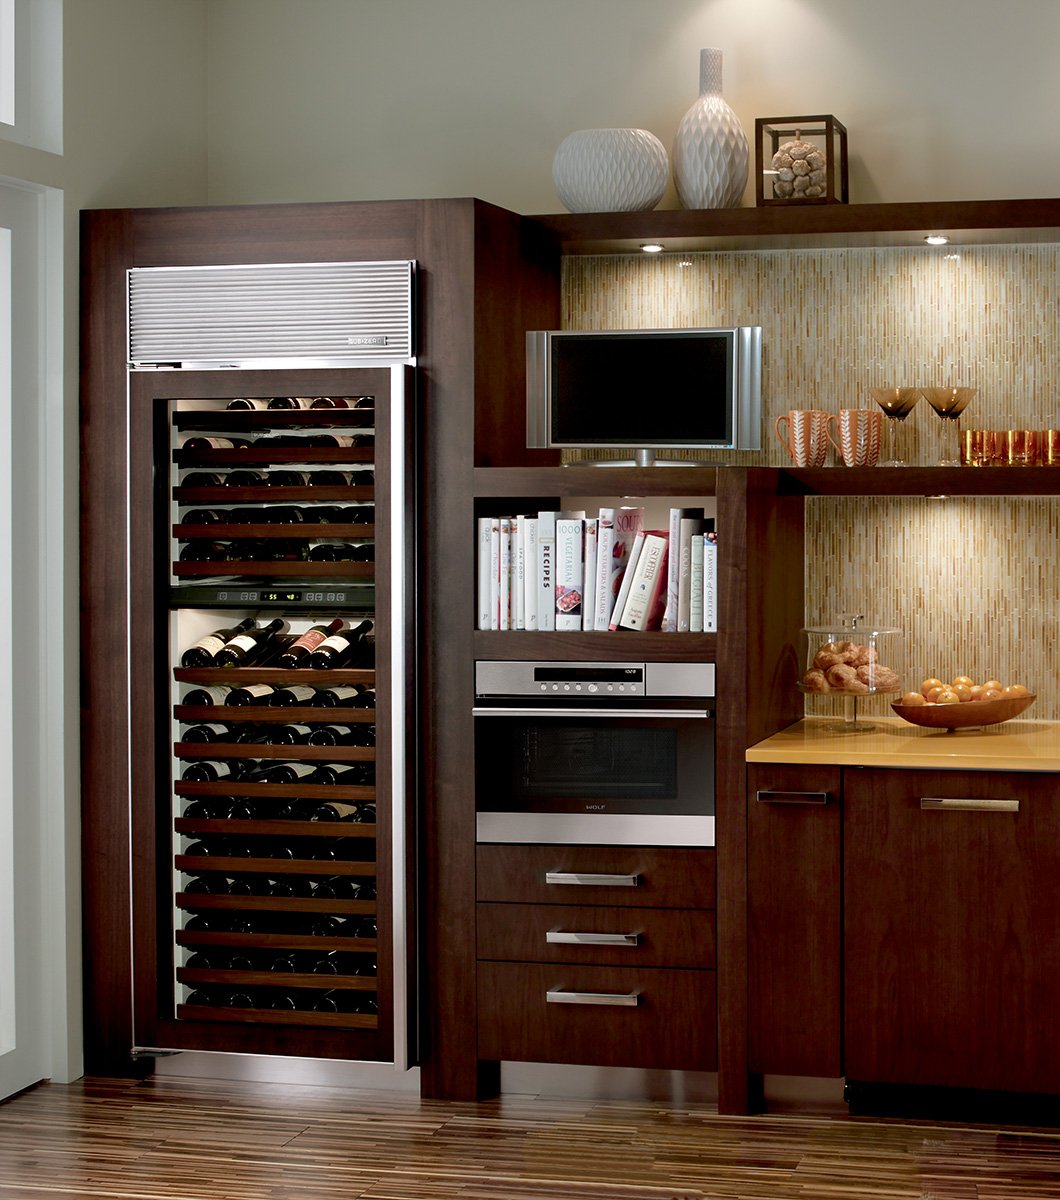 Винный холодильник встроенный. Полновстраиваемый винный шкаф. Arclinea винный шкаф. Винный холодильник sub Zero. Wine Storage model 430 винный шкаф.